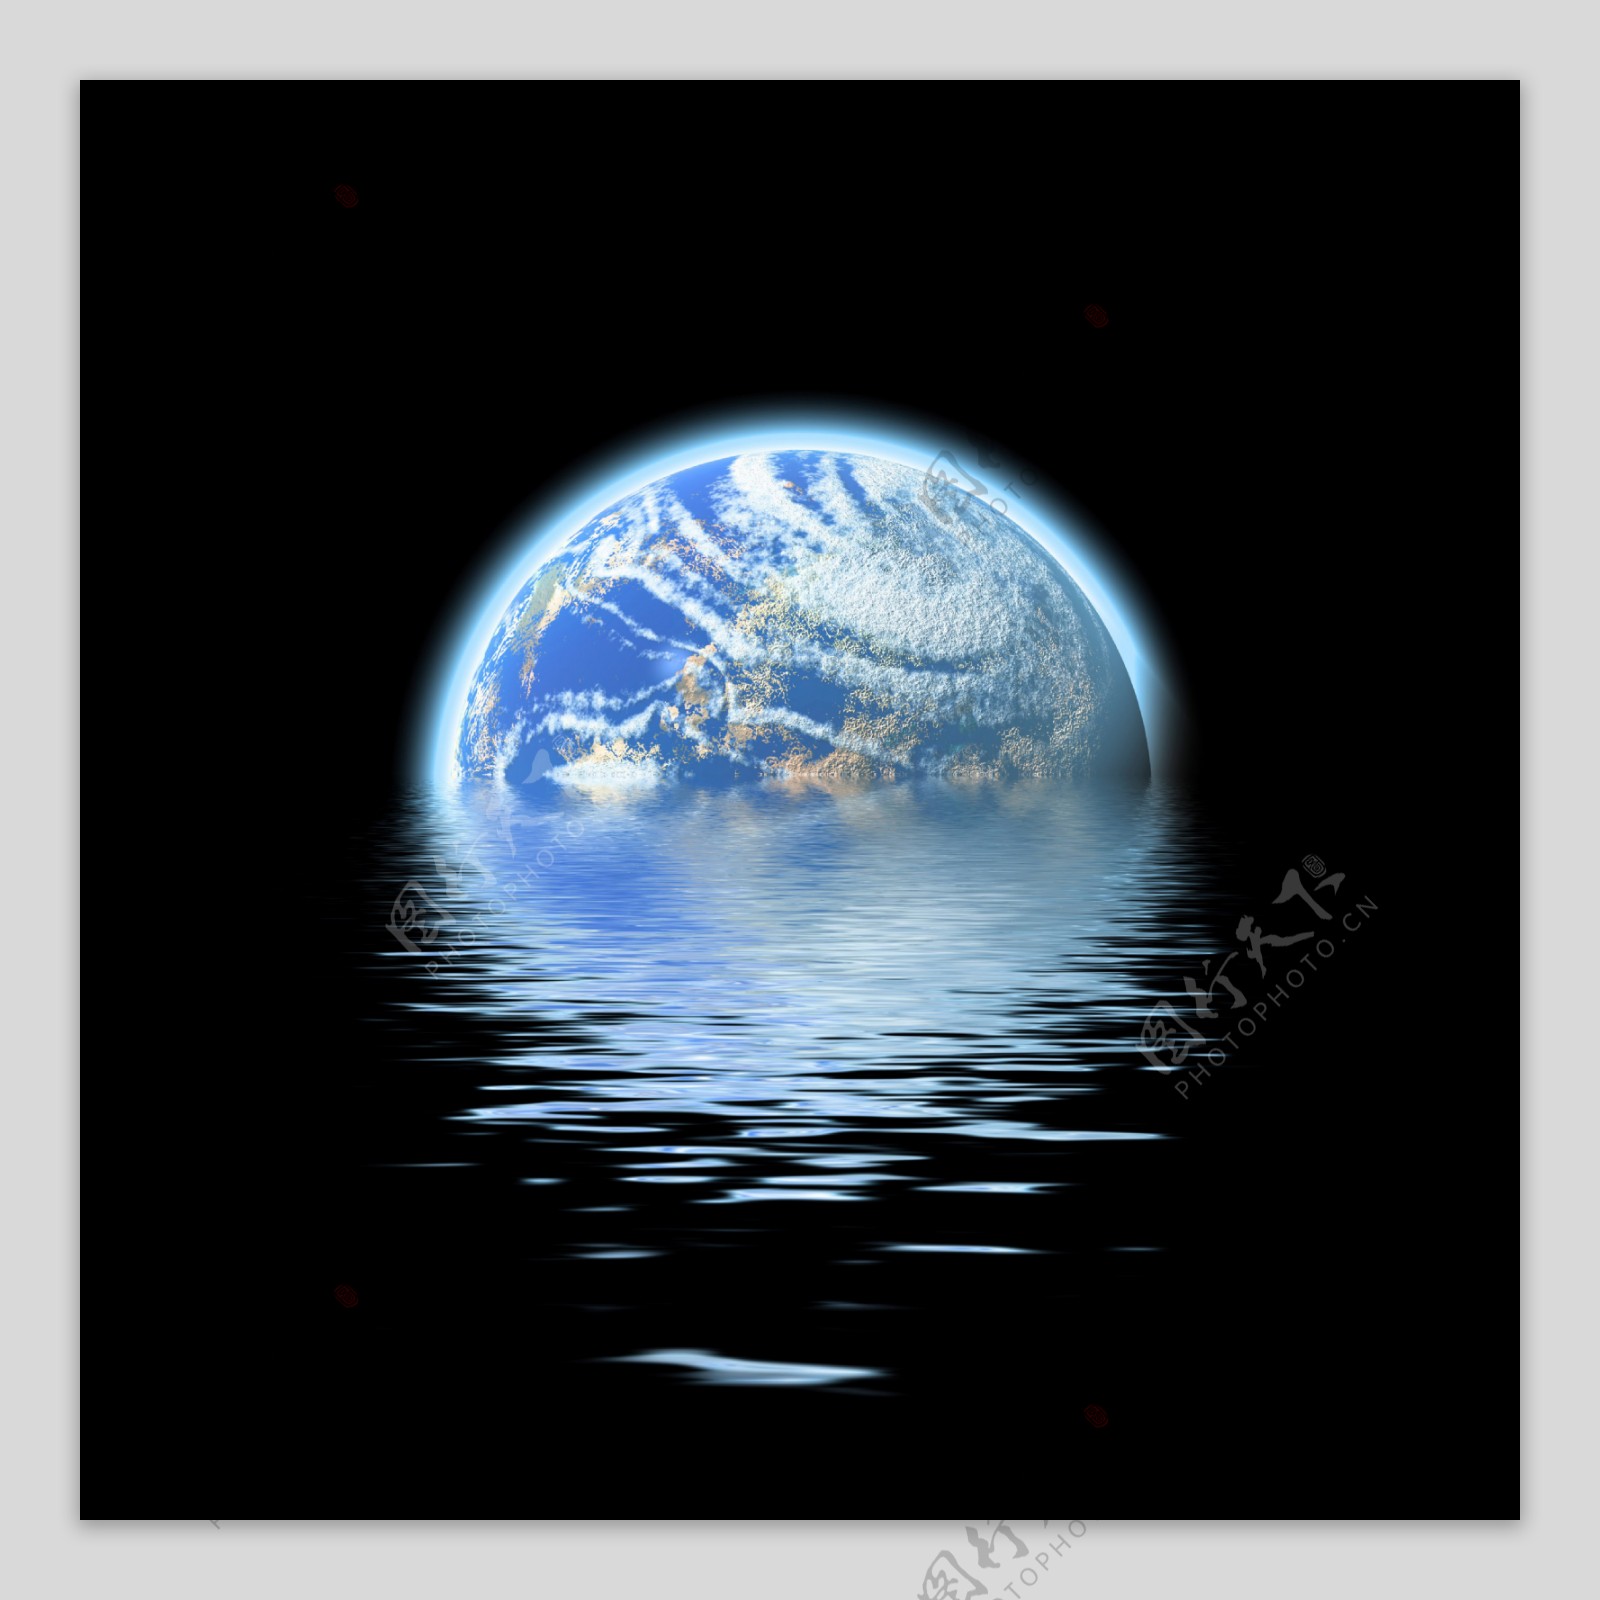 3D地球